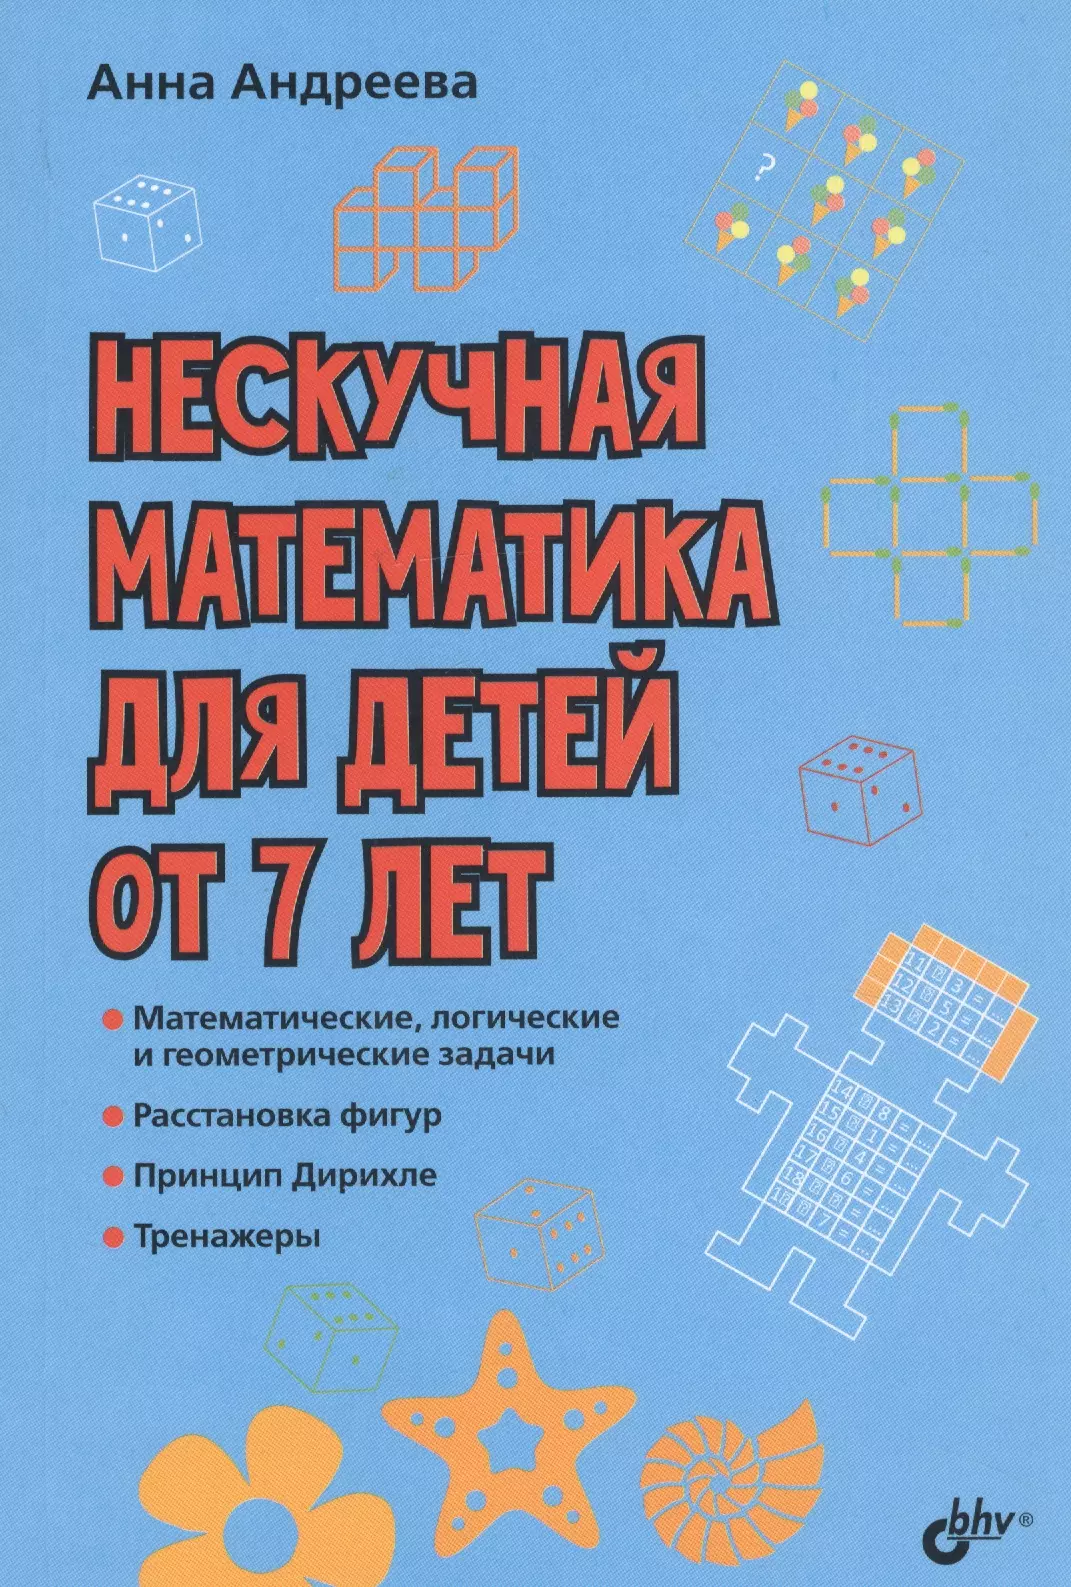 Андреева Анна О. Нескучная математика для детей от 7 лет нескучная математика для детей от 8 лет бхв петербург книжка для школьников